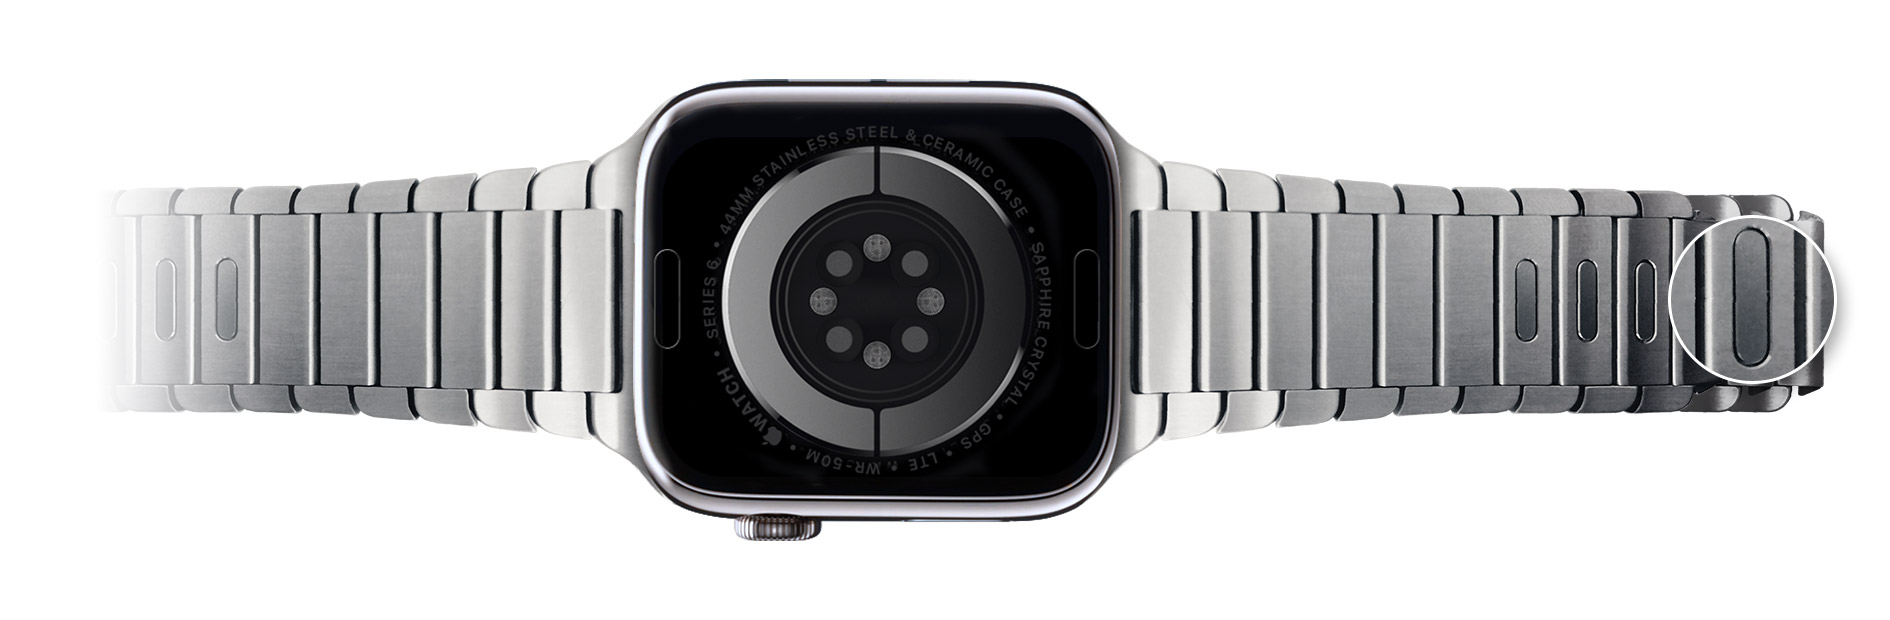 Apple Watchin rannekkeen linkkujen pikavapautuspainikkeet. 